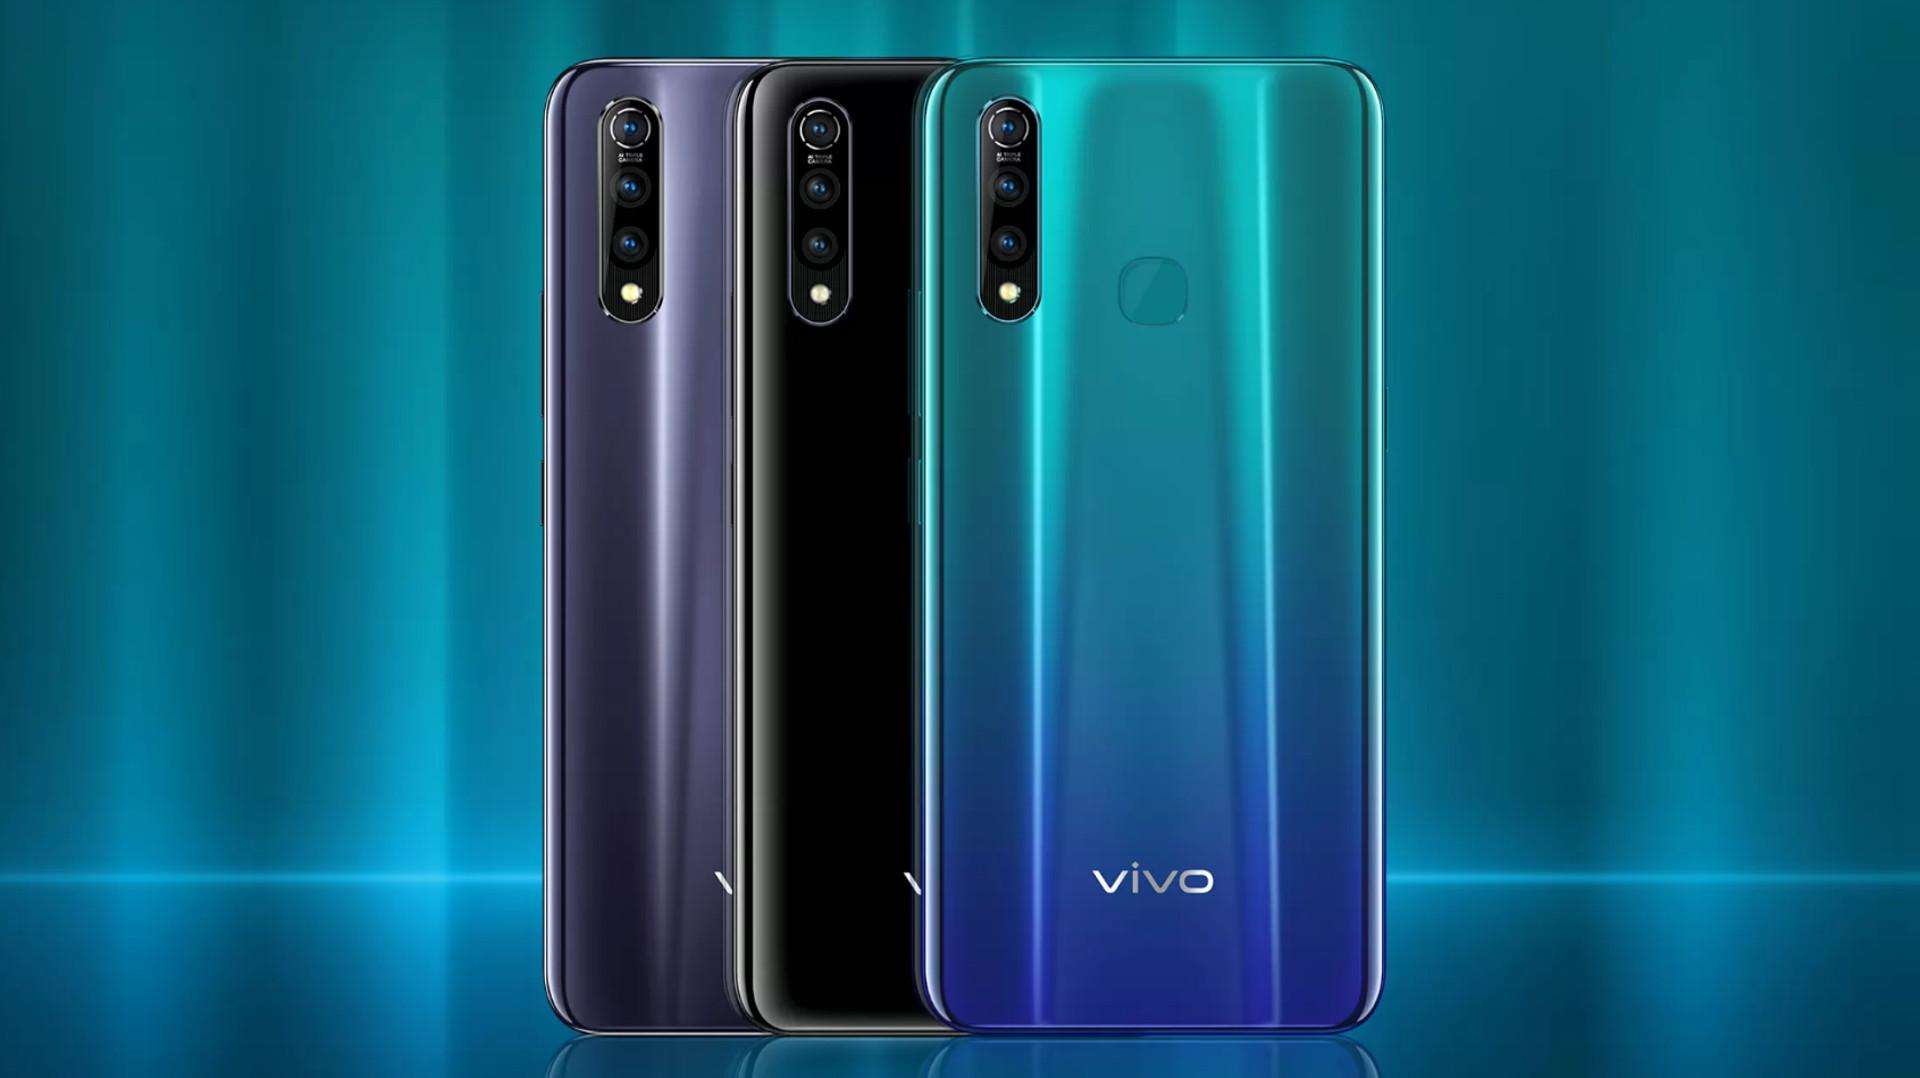 Vivo Z1 Pro स्मार्टफोन के लिए अपडेट जारी कर दिया गया है, जानें